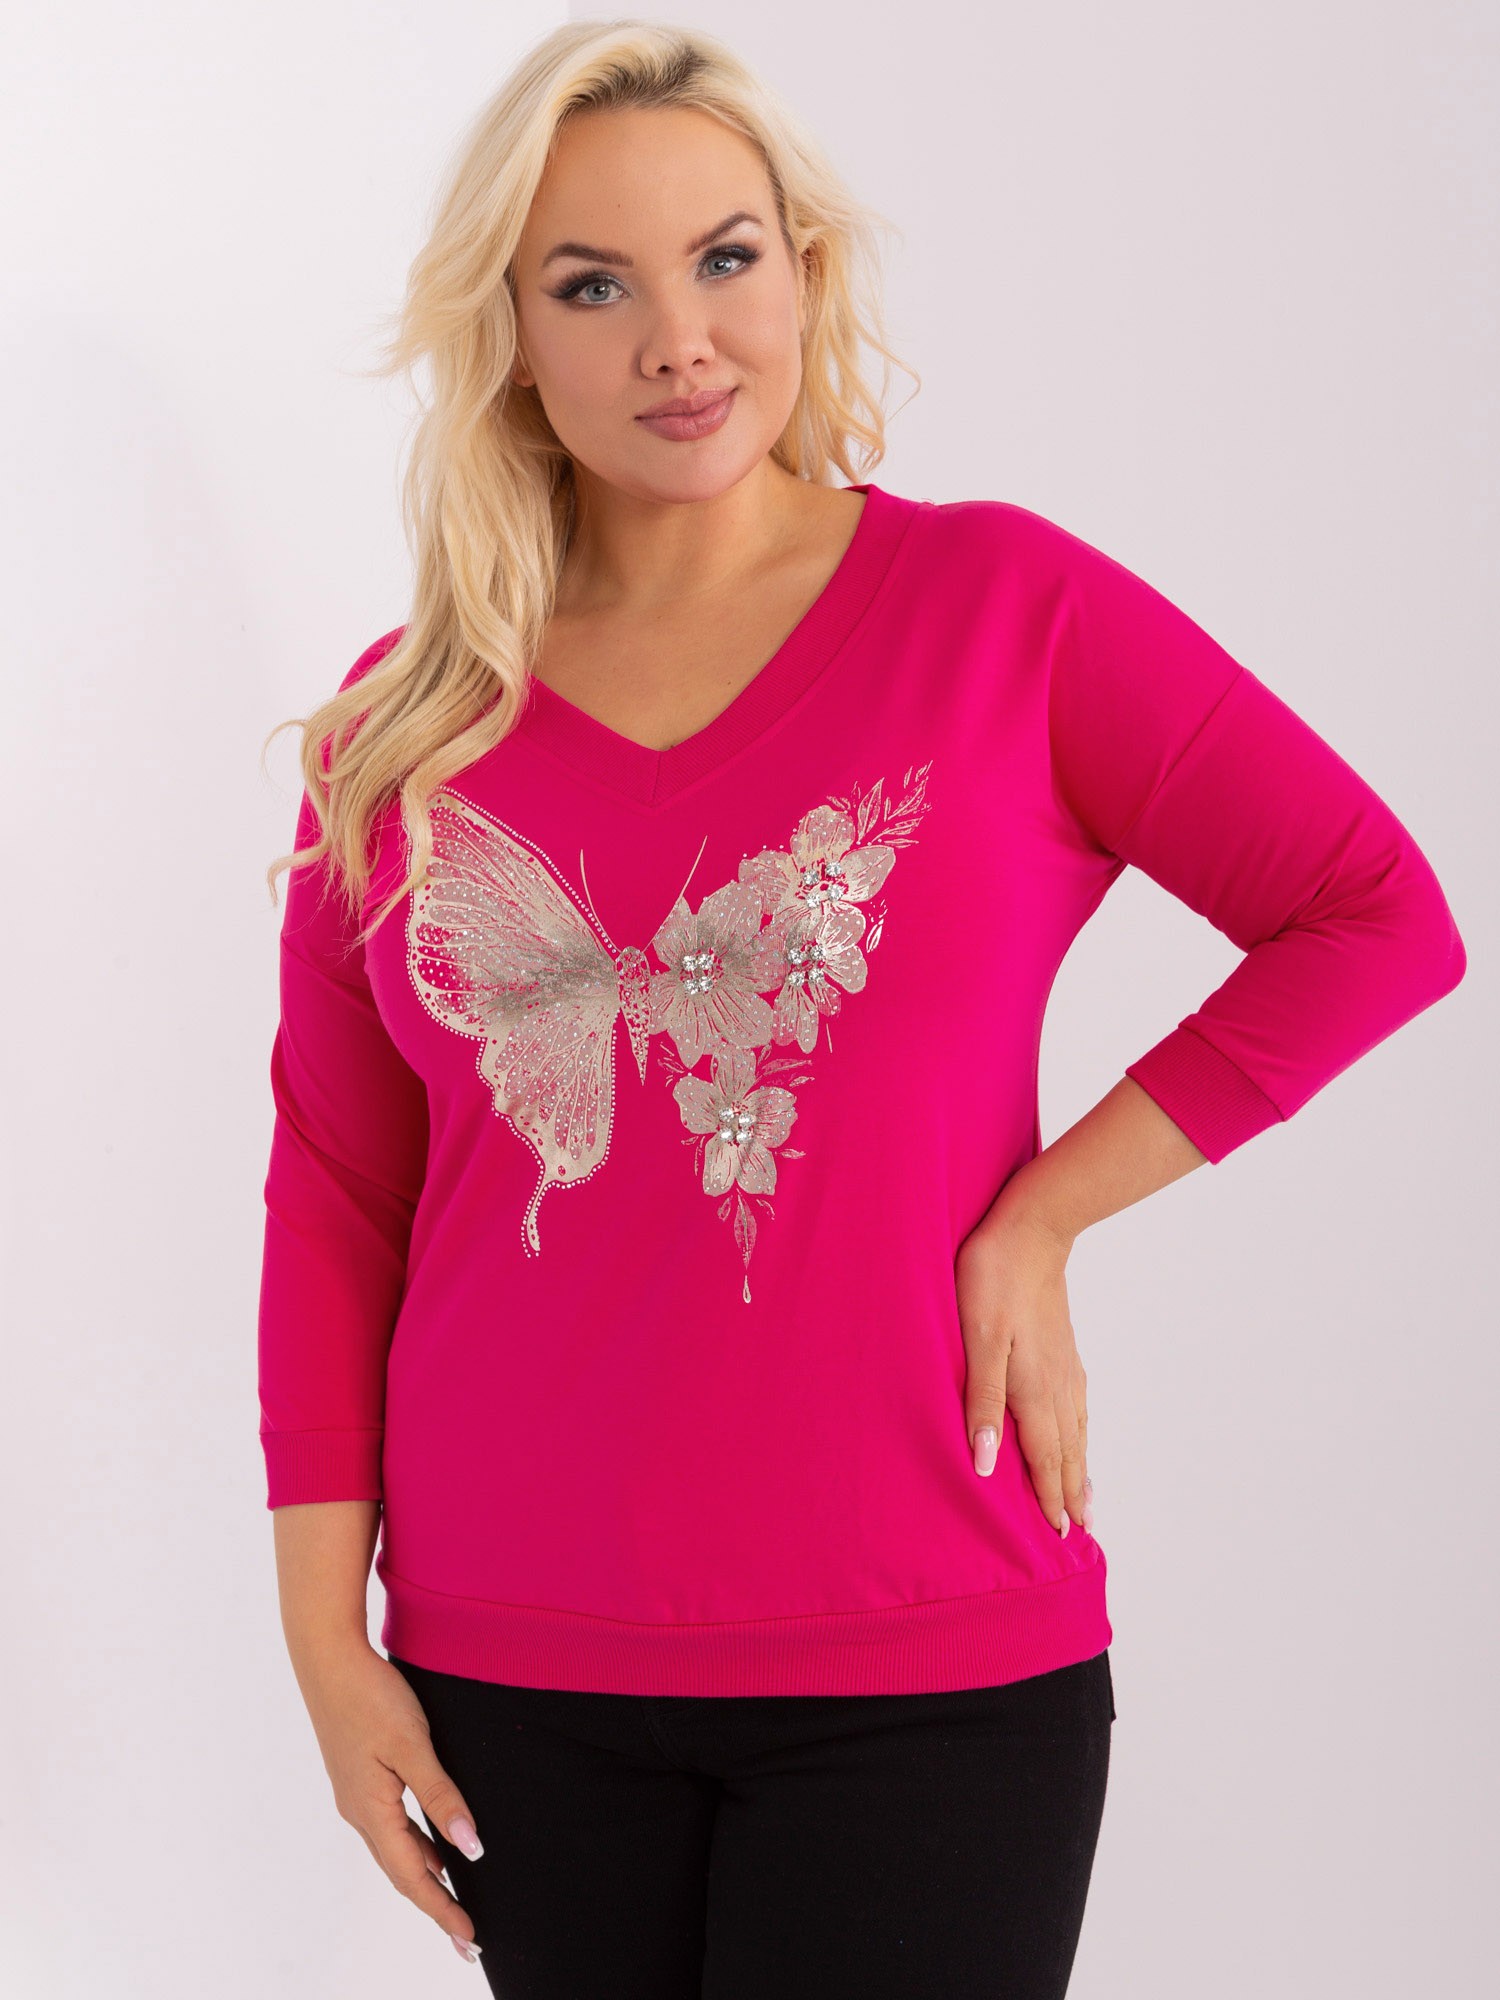 Tmavě růžové tričko s aplikací motýla RV-BZ-9189.38-dark pink Velikost: ONE SIZE